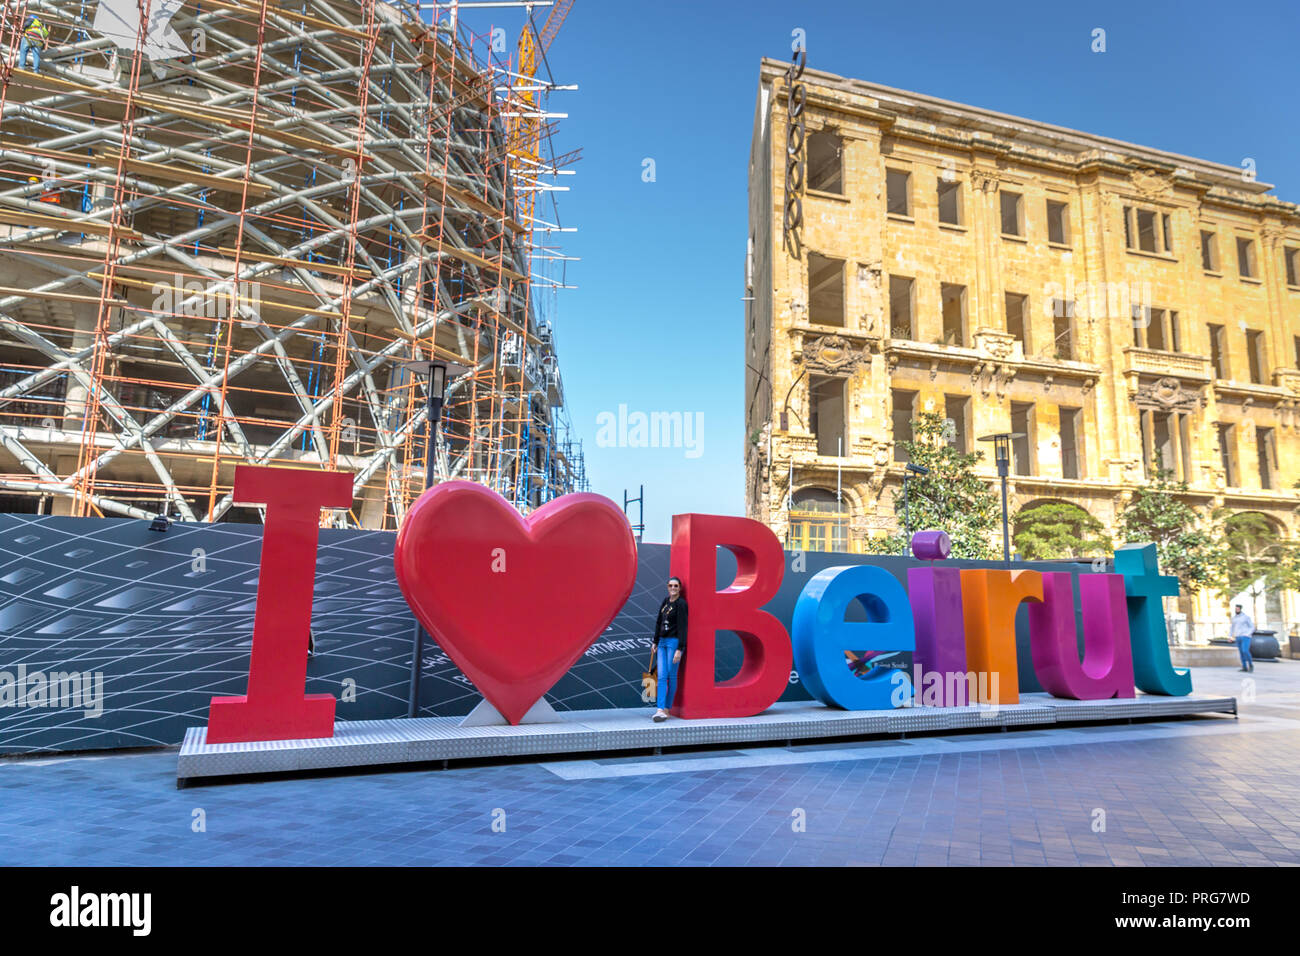 Beyrouth, Liban - Feb 5th 2018 - Jeune femme de prendre une photo au 'J'aime' signe de Beyrouth à Beyrouth, Liban Banque D'Images